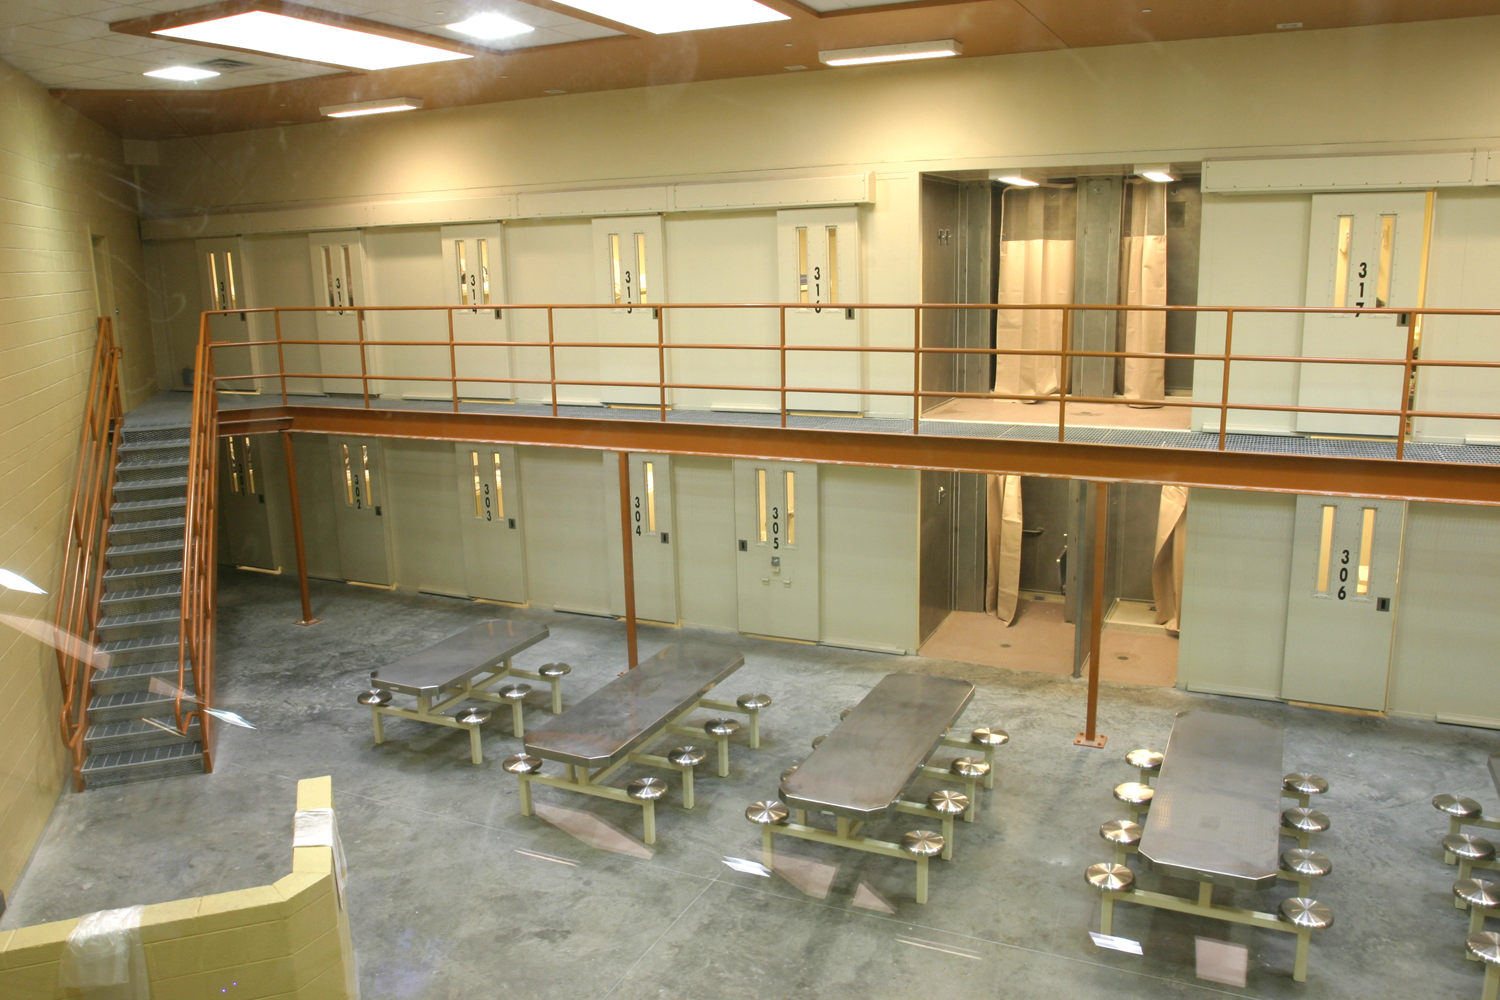 Bibb County Jail in Georgia